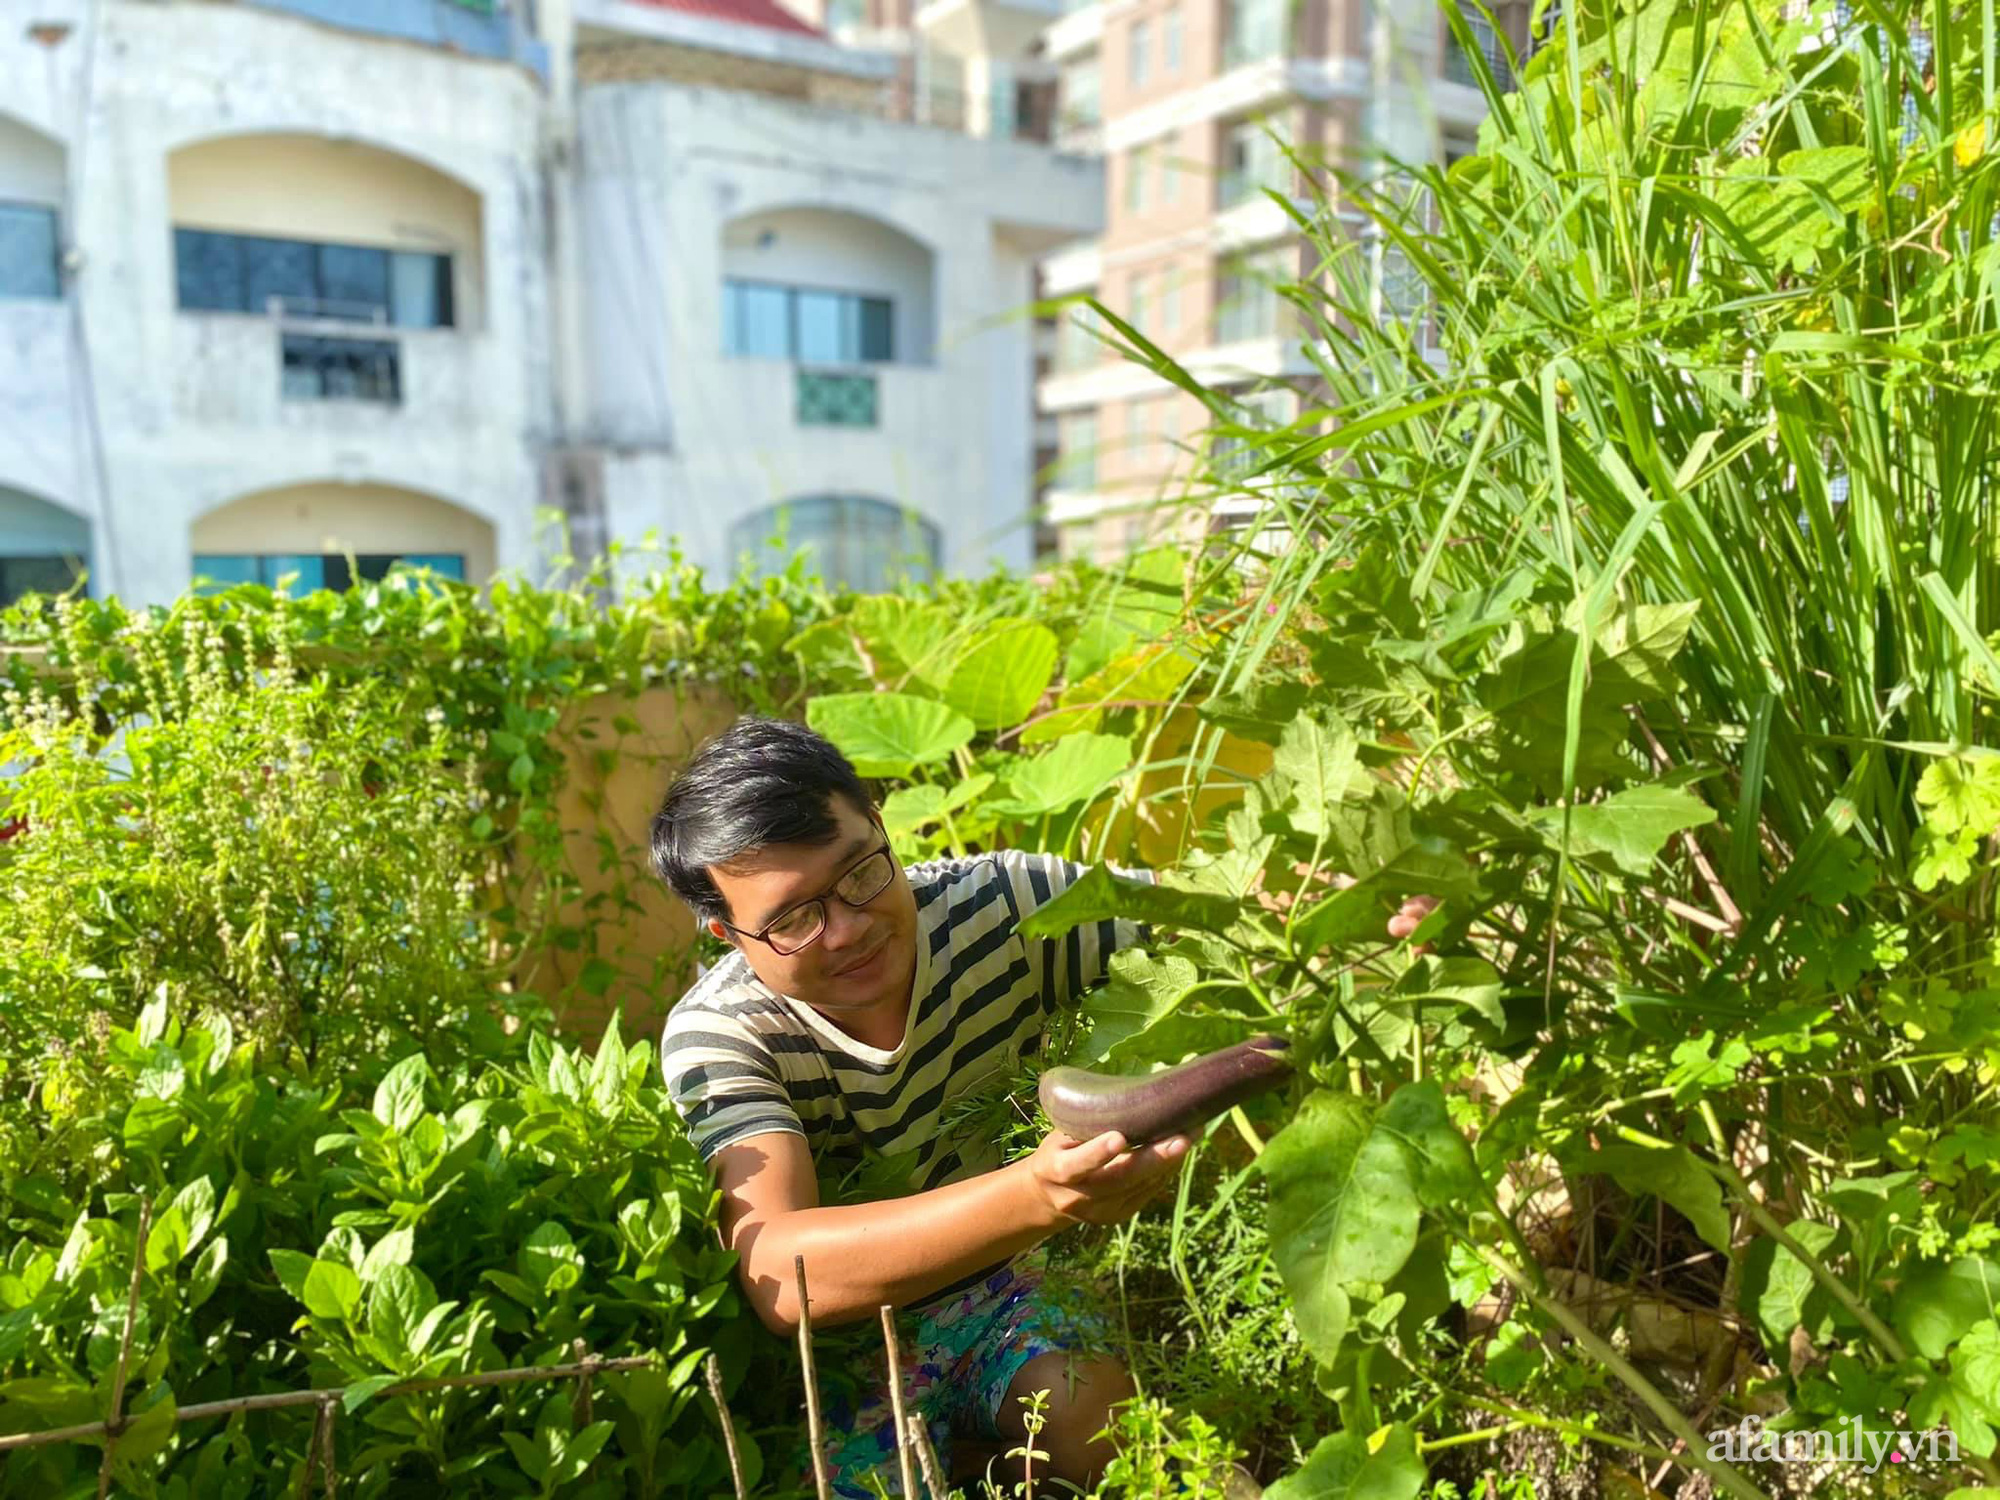 Sân thượng 20m2 xanh mướt có đủ rau, hoa, góc thưởng trà thư giãn ở Sài Gòn - Ảnh 2.